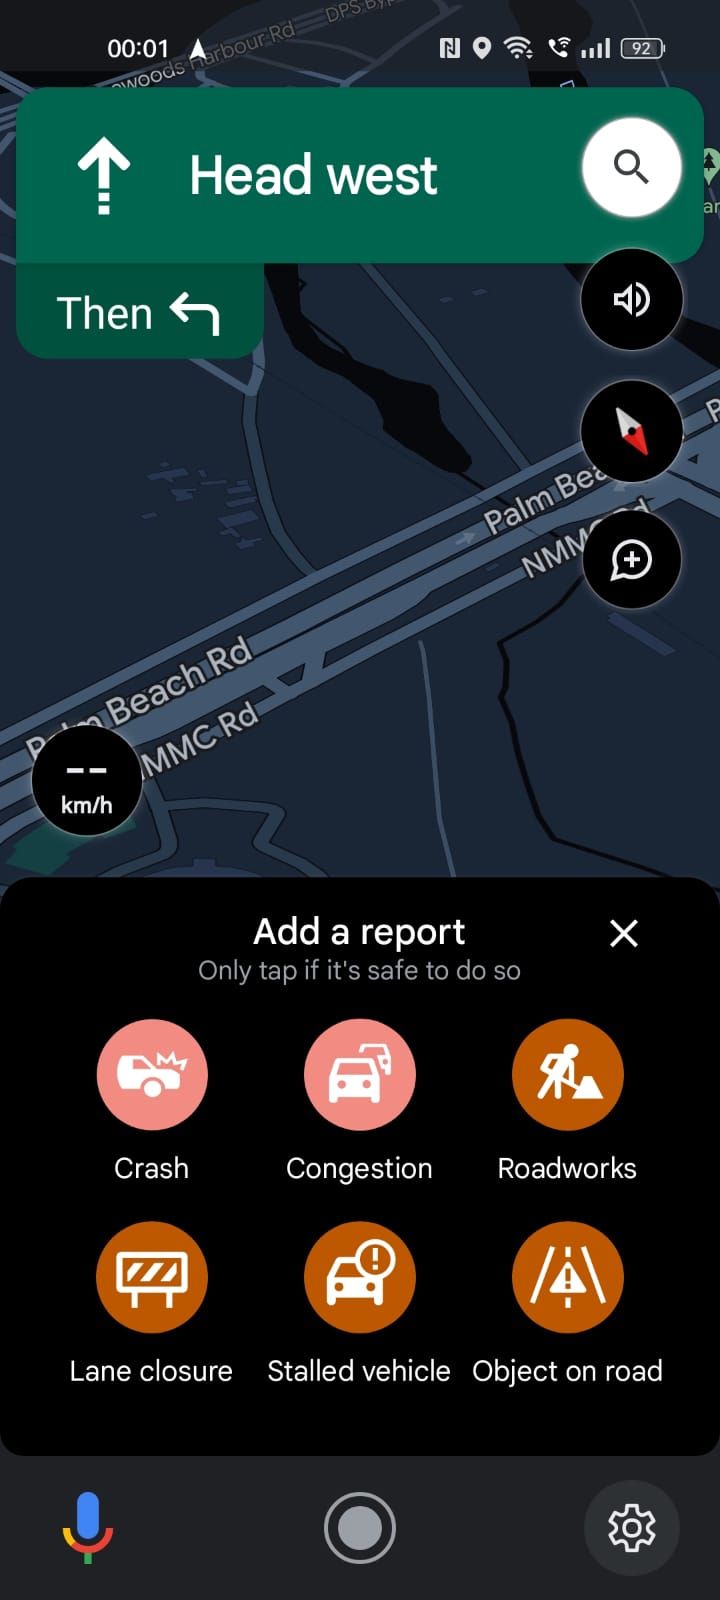 Captura de tela mostrando as opções de incidente no app Google Maps